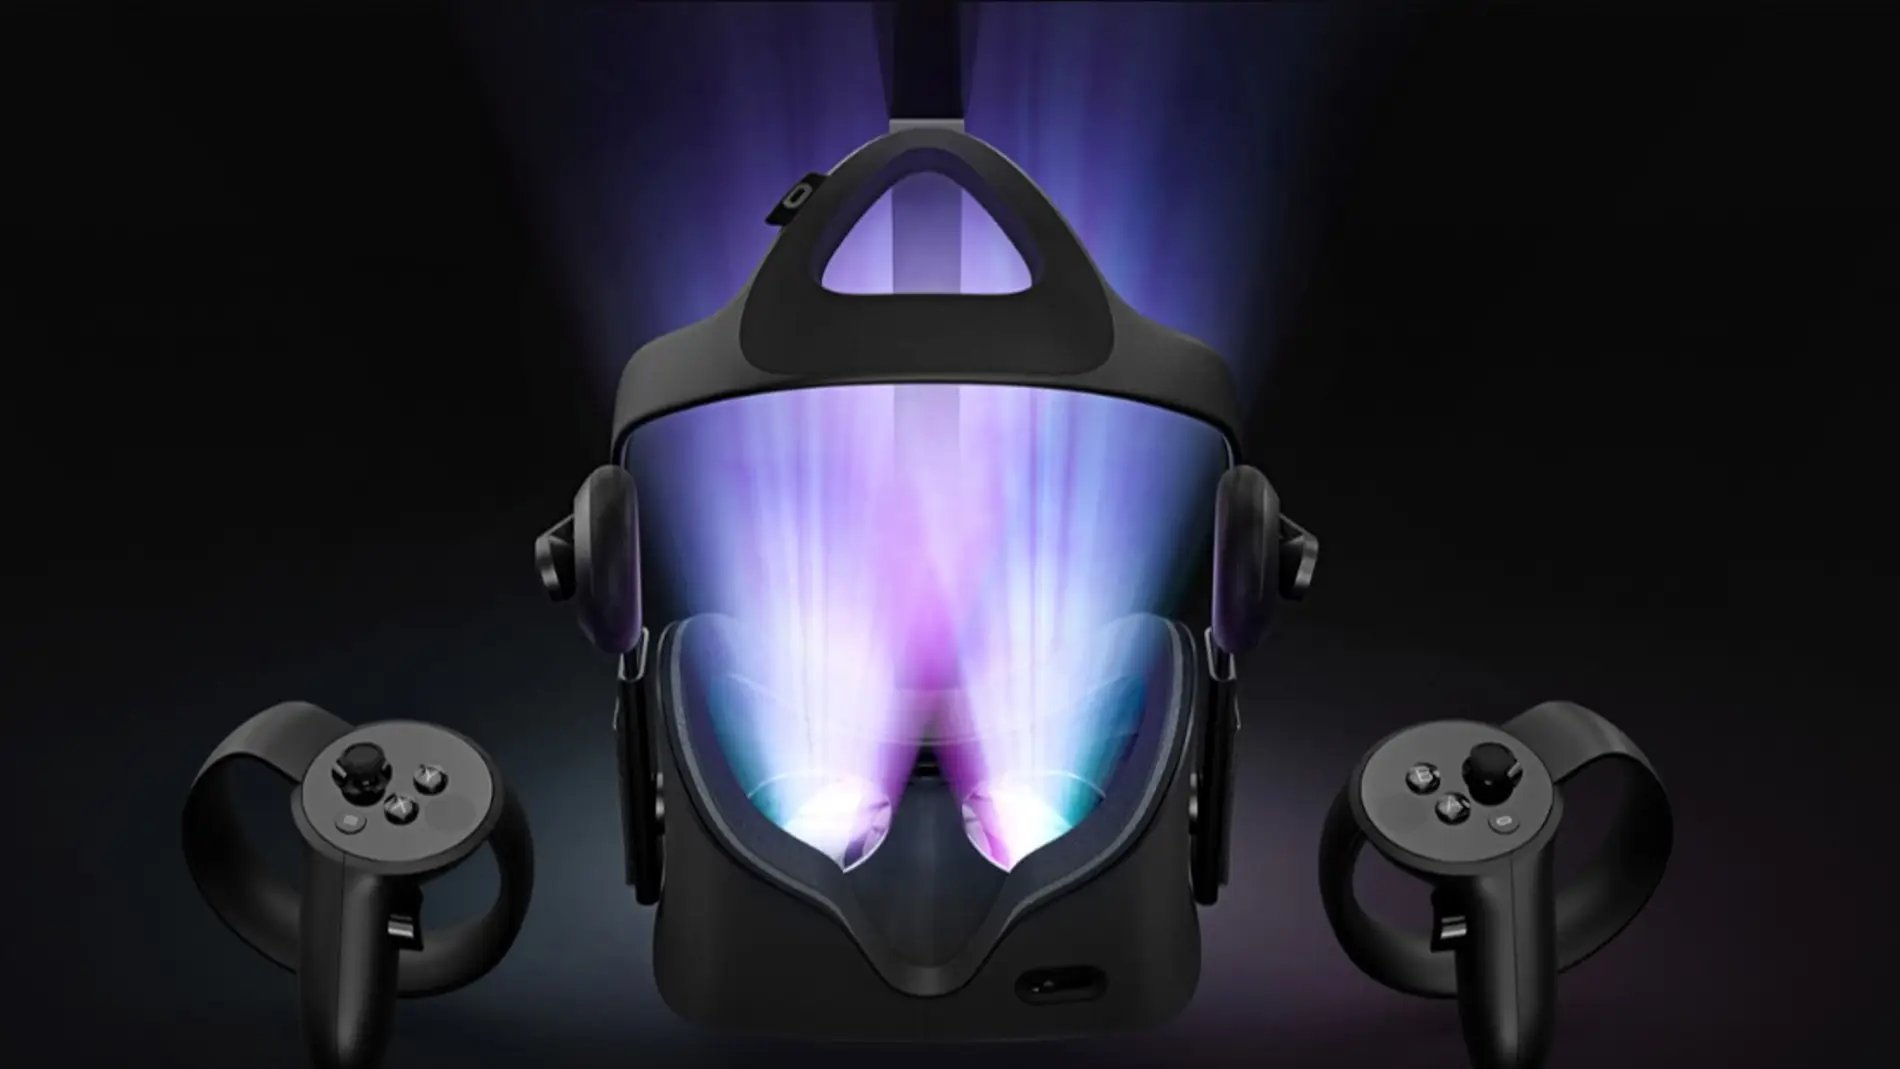 Productos actuales como estas Oculus Rift podrían quedarse repentinamente obsoletos si los planes de Apple se hacen realidad